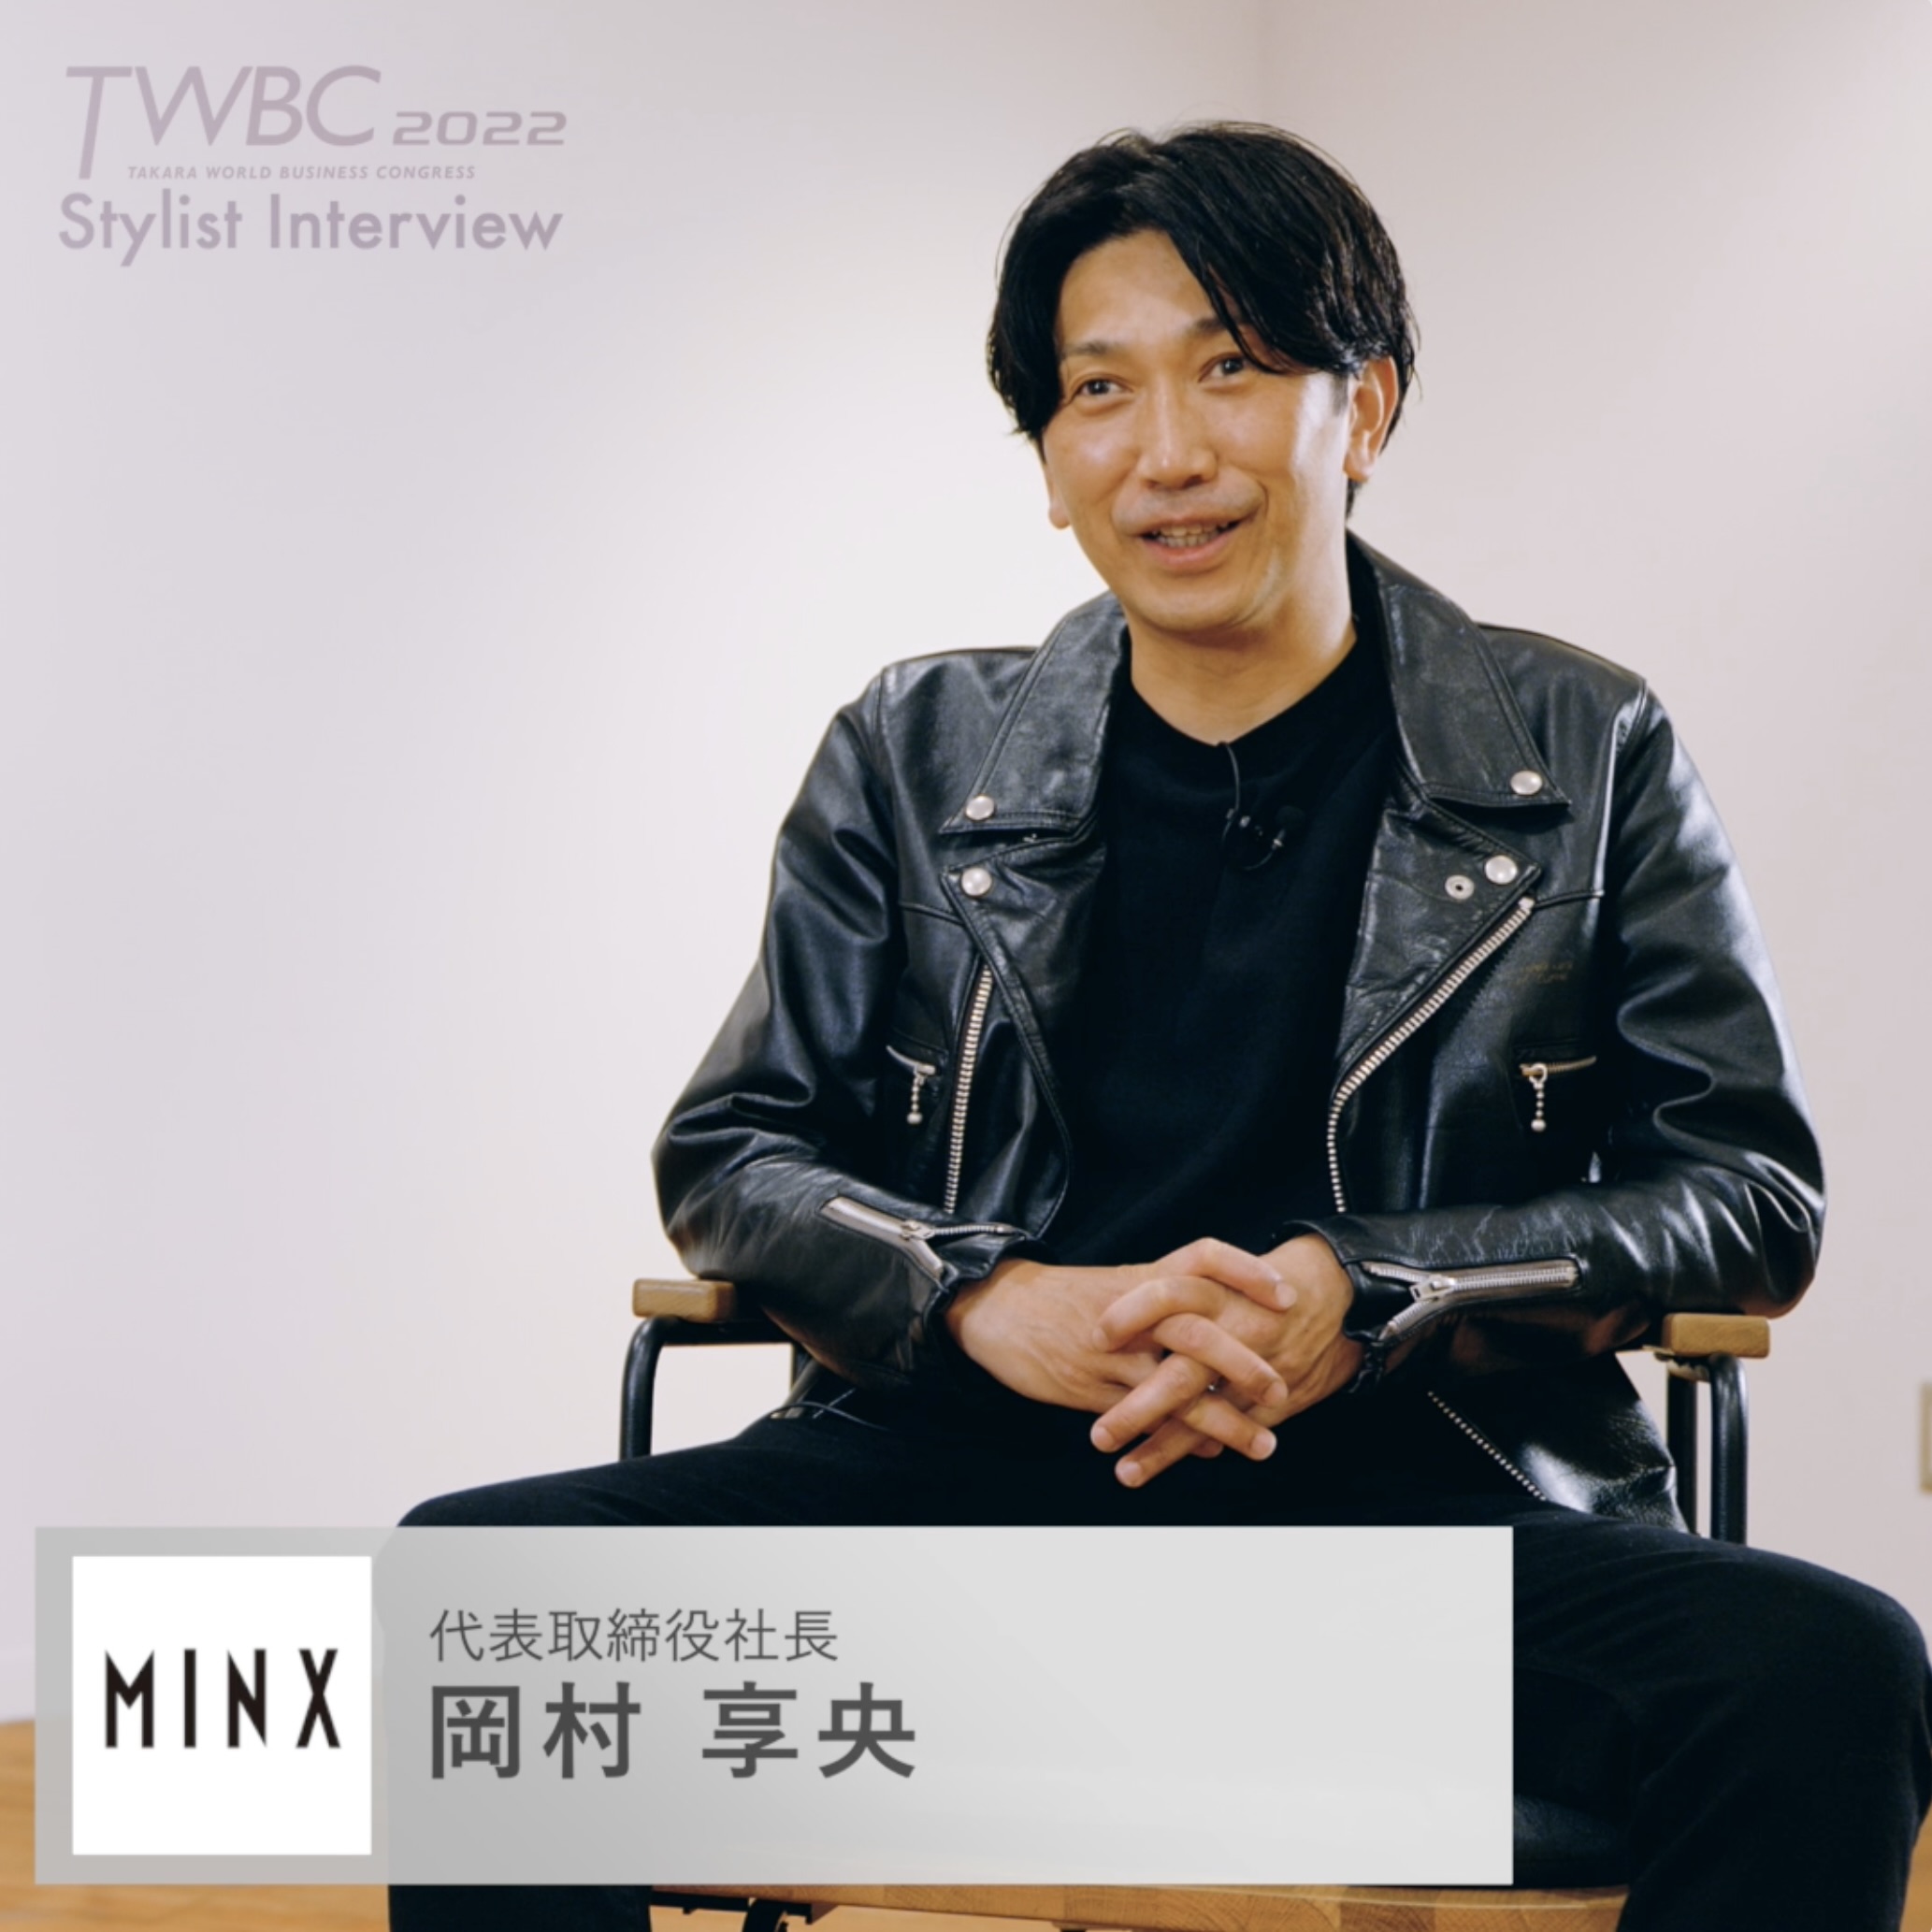 美の祭典「TWBC2022」岡村享央 インタビュー動画公開